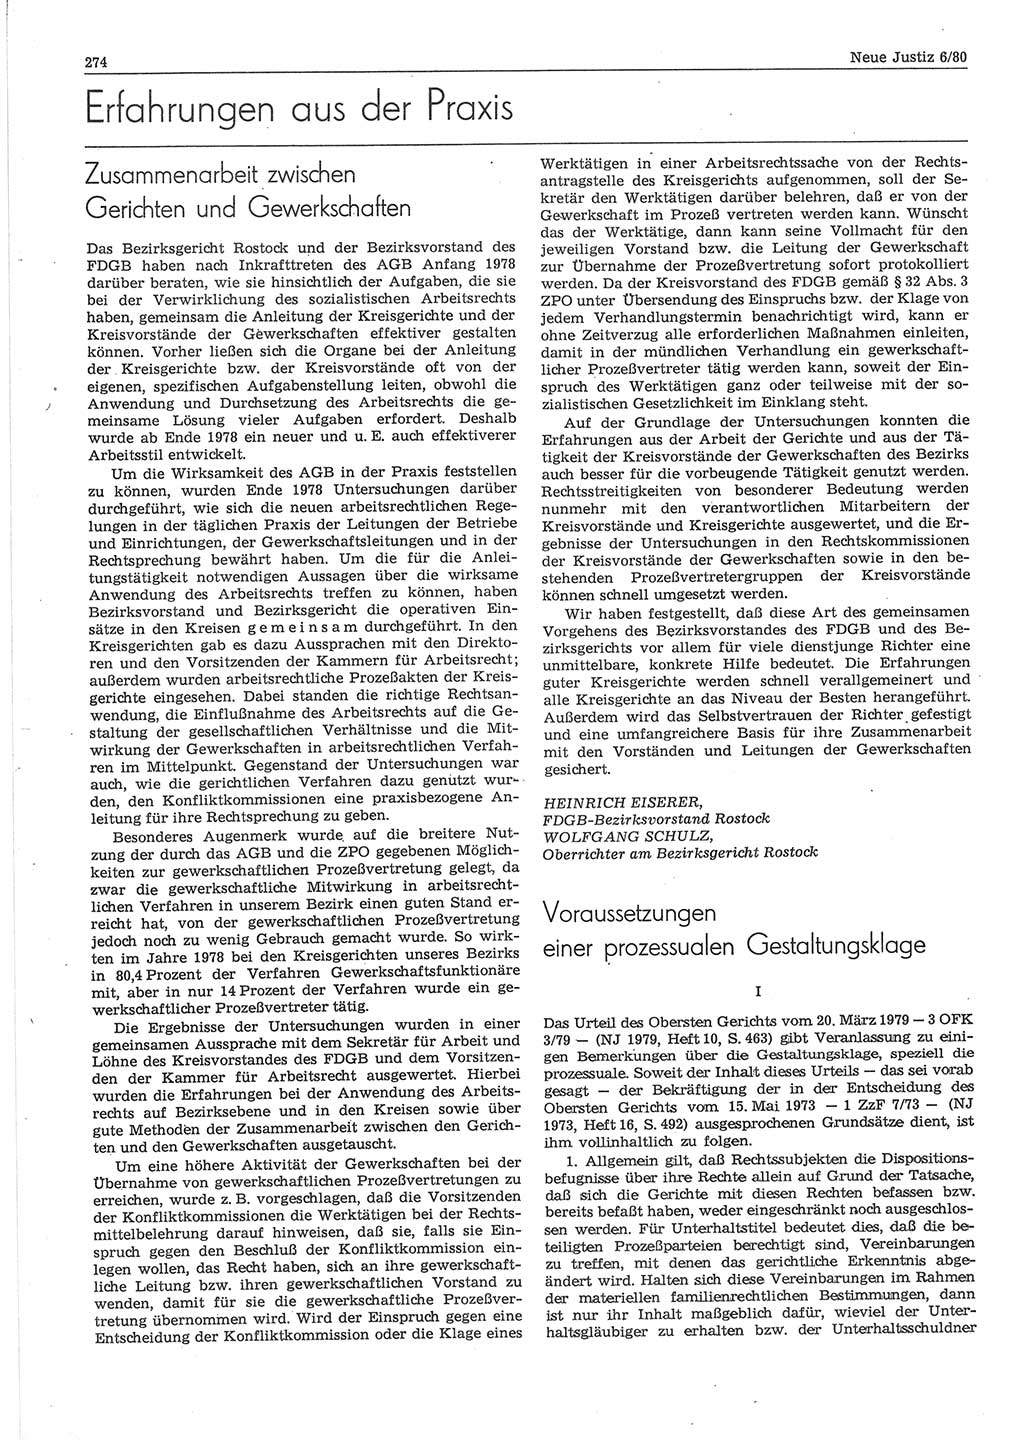 Neue Justiz (NJ), Zeitschrift für sozialistisches Recht und Gesetzlichkeit [Deutsche Demokratische Republik (DDR)], 34. Jahrgang 1980, Seite 274 (NJ DDR 1980, S. 274)